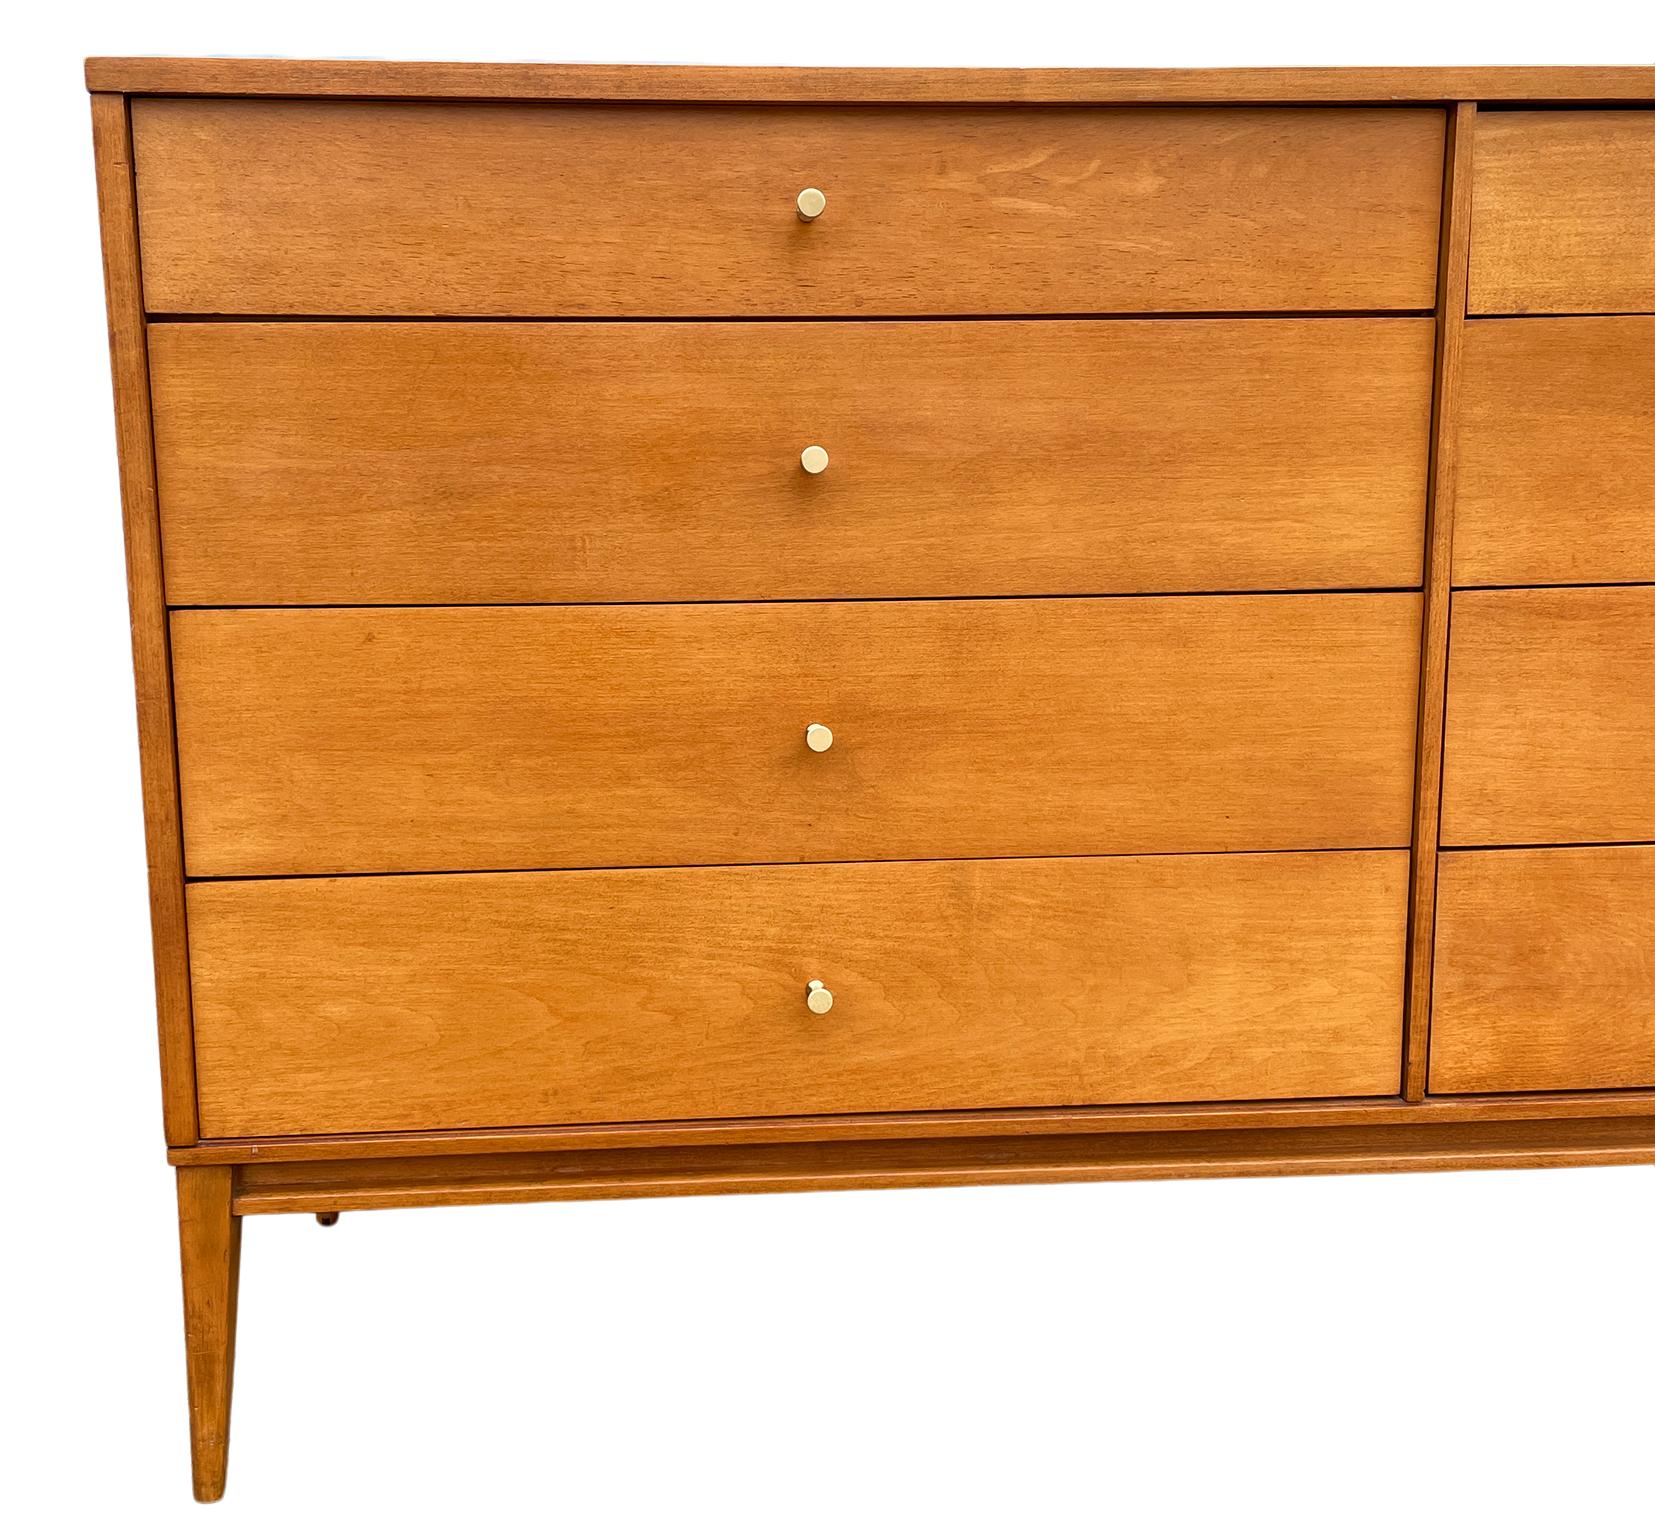 Woodwork Midcentury Paul McCobb 8-Drawer Dresser Credenza #1507 Blonde Maple Brass Pulls